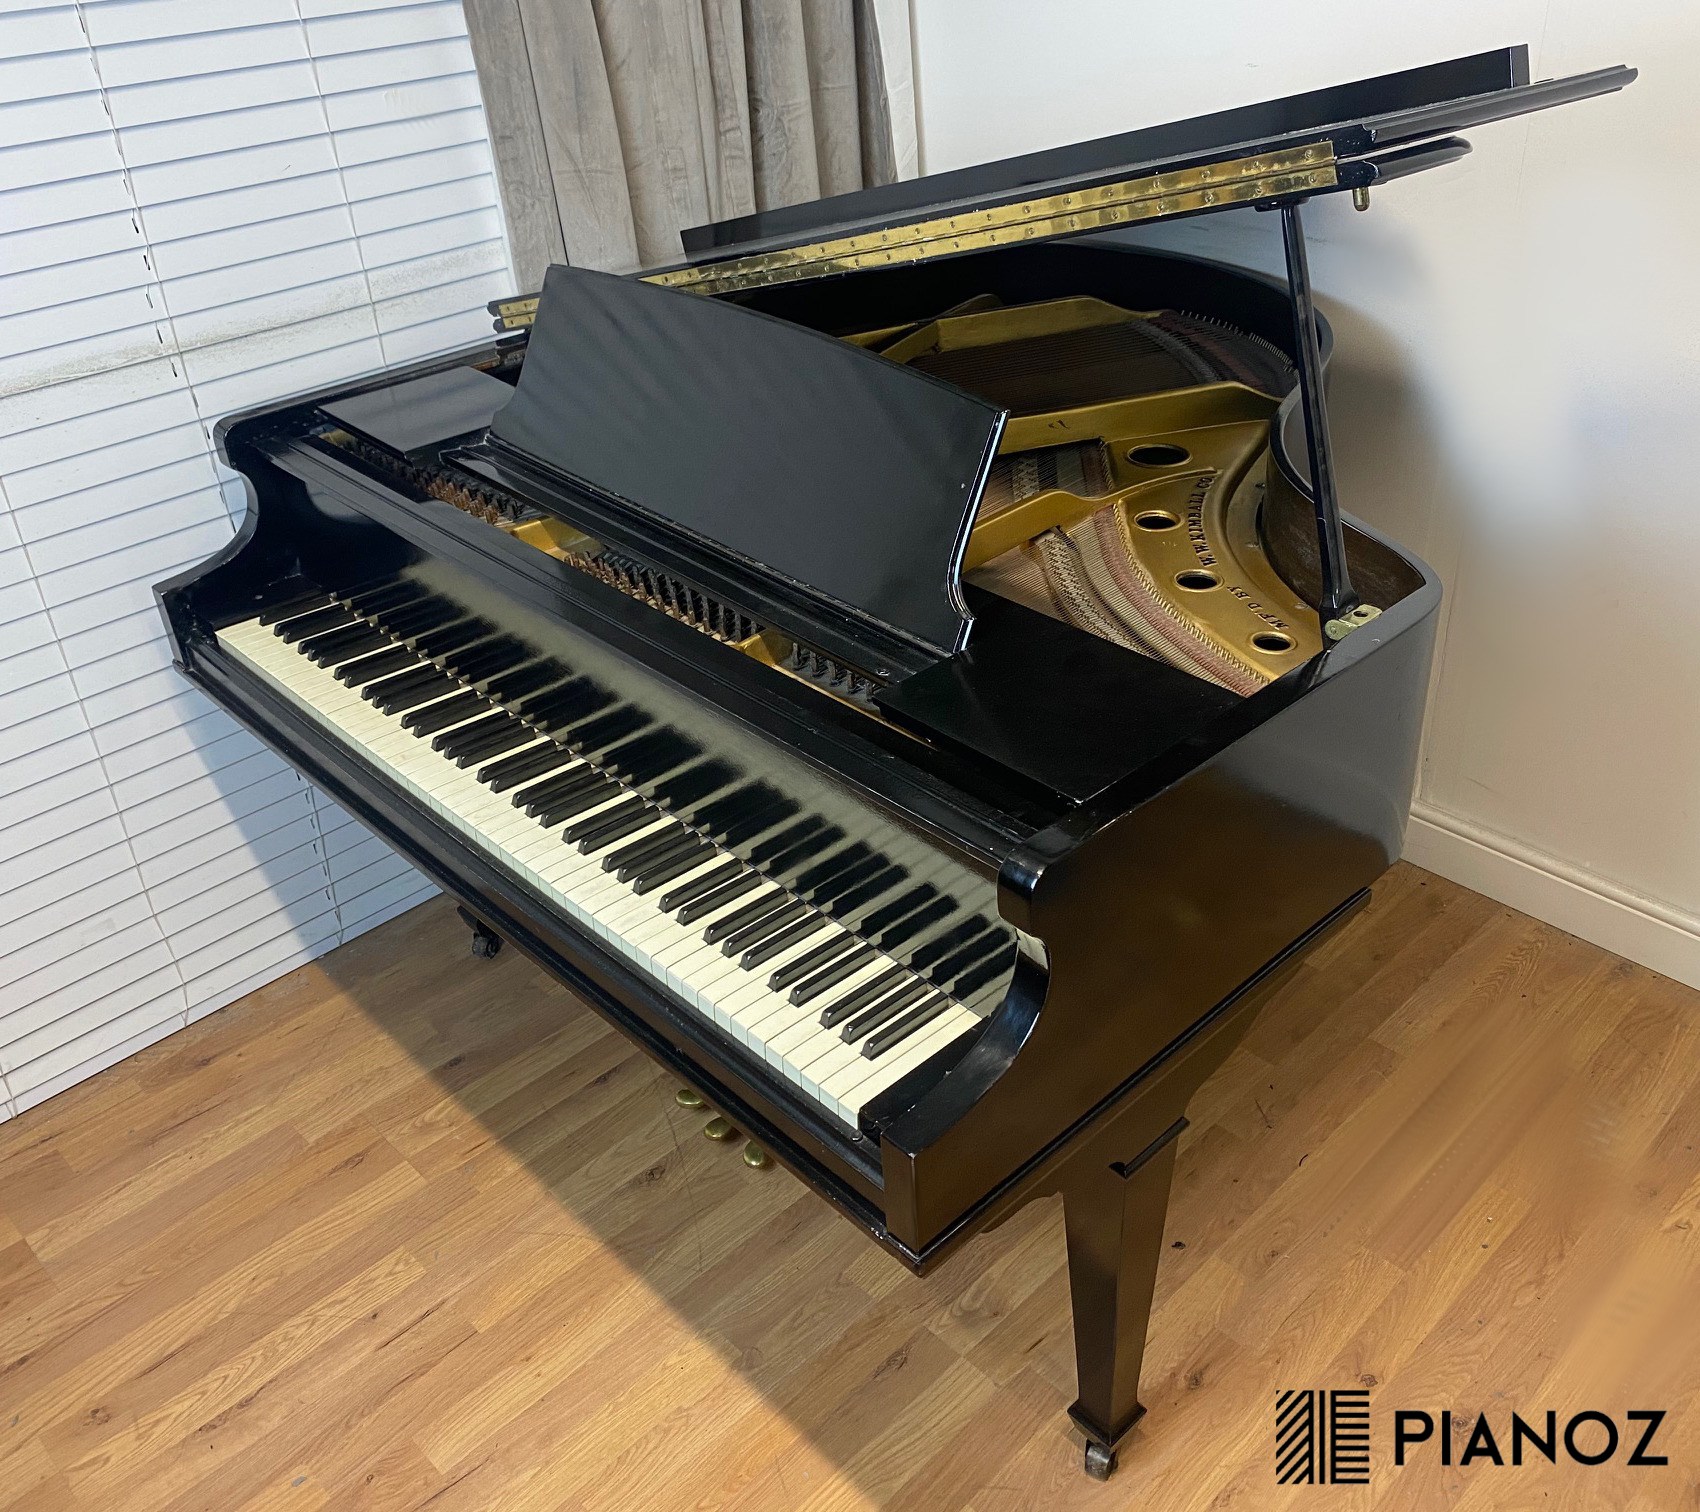 kimball baby grand piano 421842